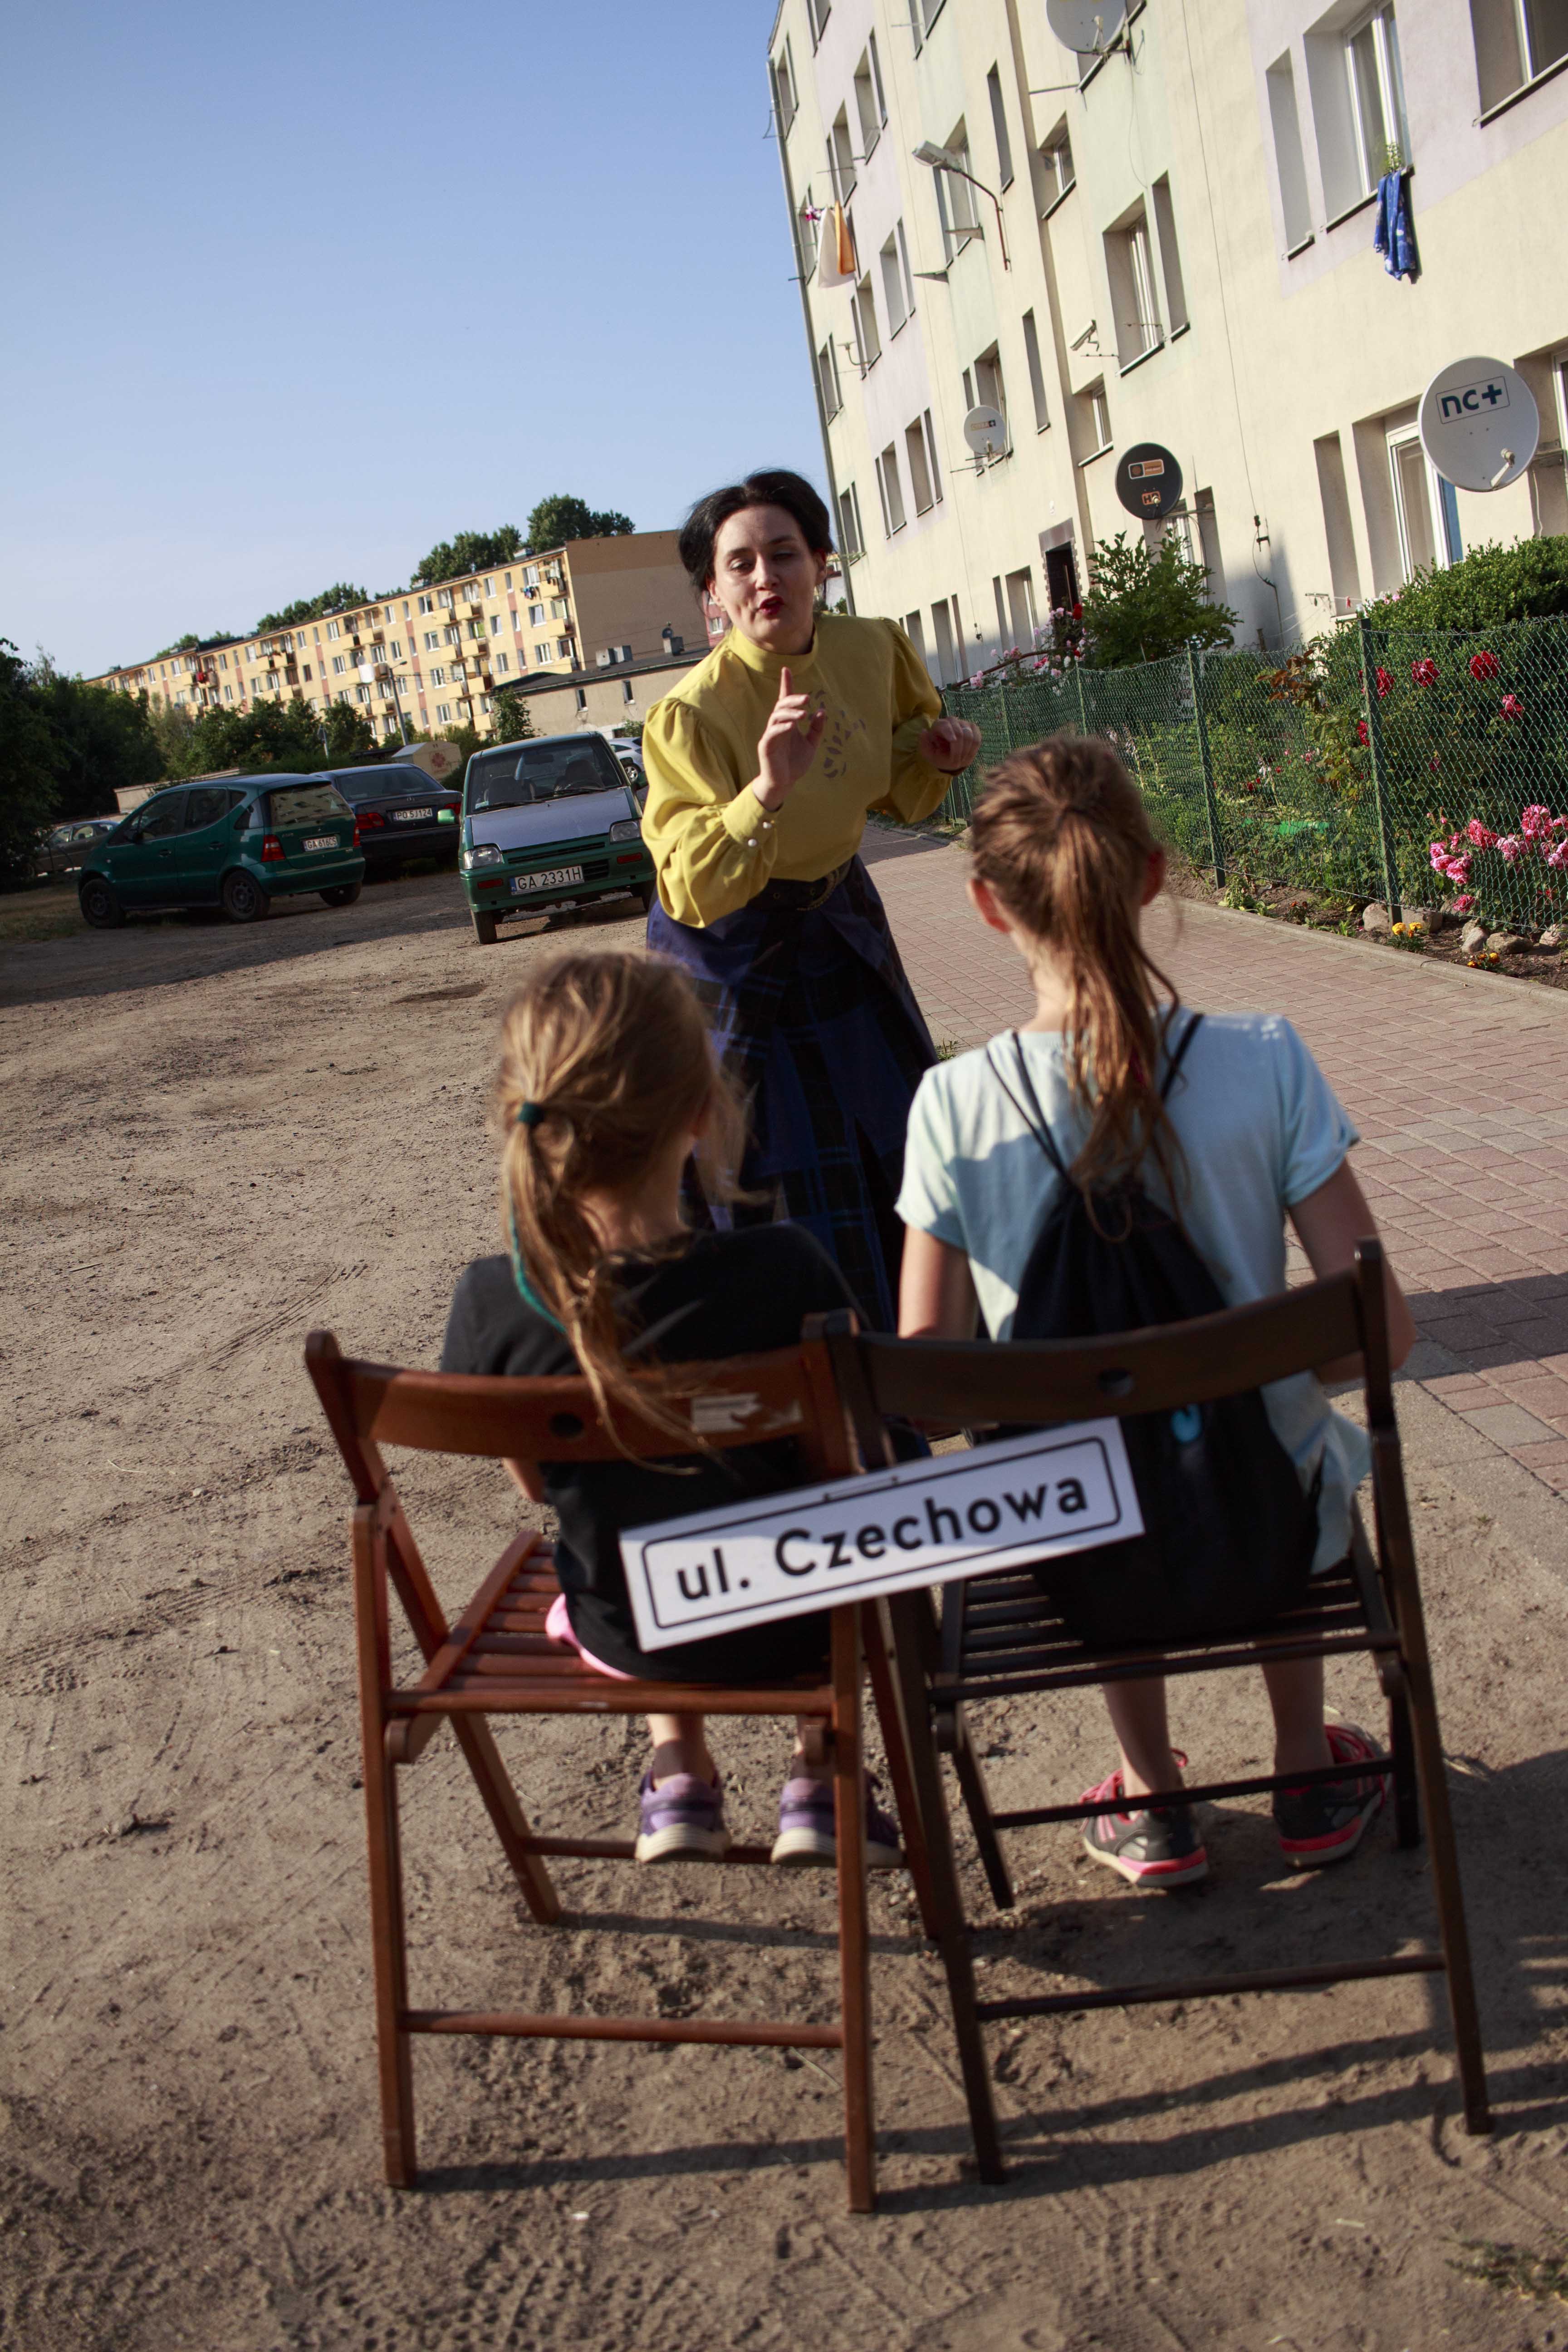 Na krzesłach z podpisem ul. Czechowa siedzą dwie dziewczynki. Przed nimi stoi kobieta ubrana w długą, ciemną spódnicę i żółtą koszulę. Kobieta pochyla się w kierunku dziewczynek.